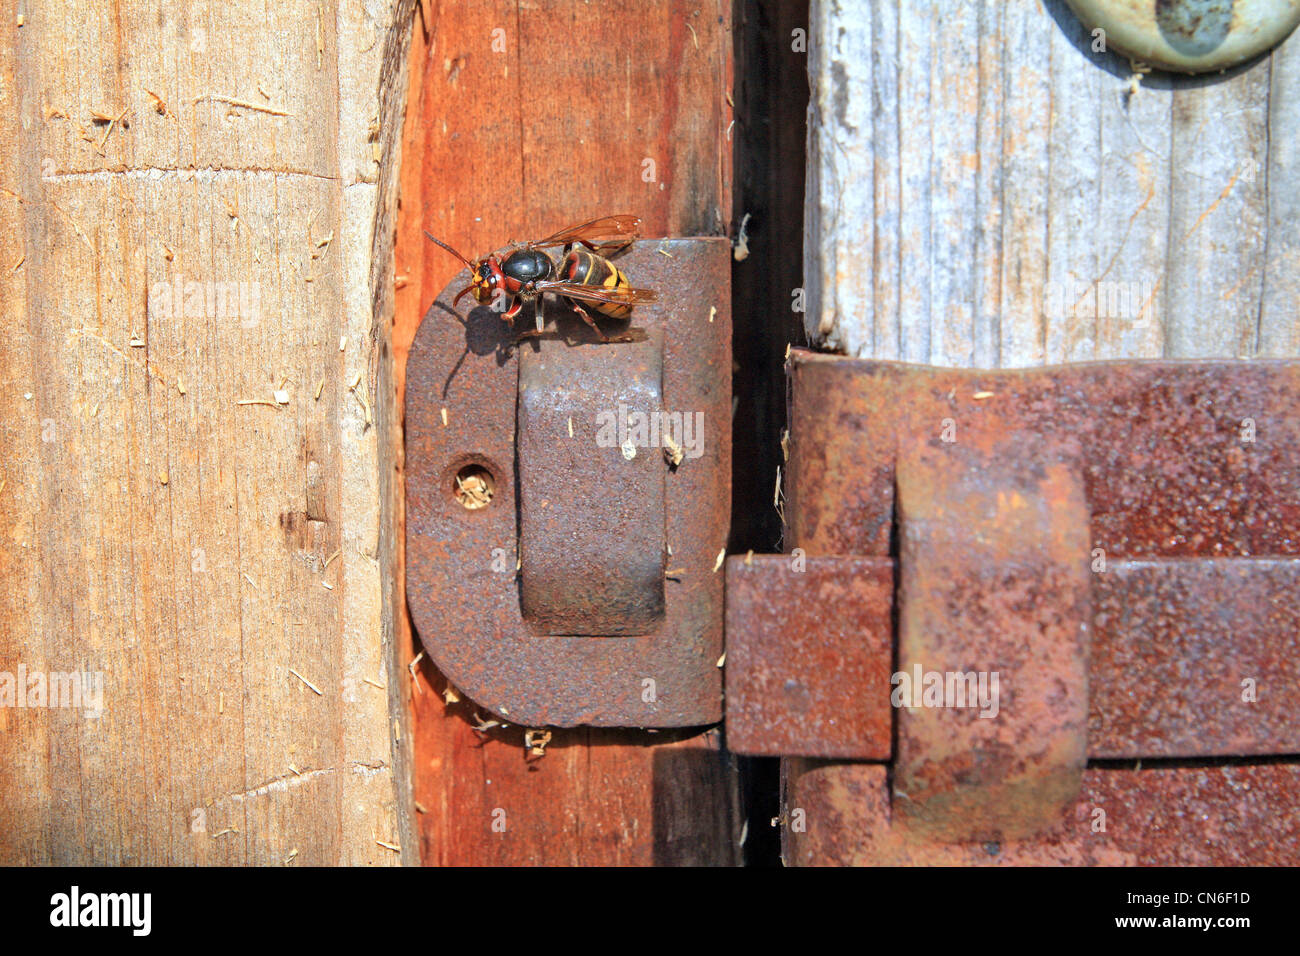 Wasp su una vecchia porta di legno Foto Stock